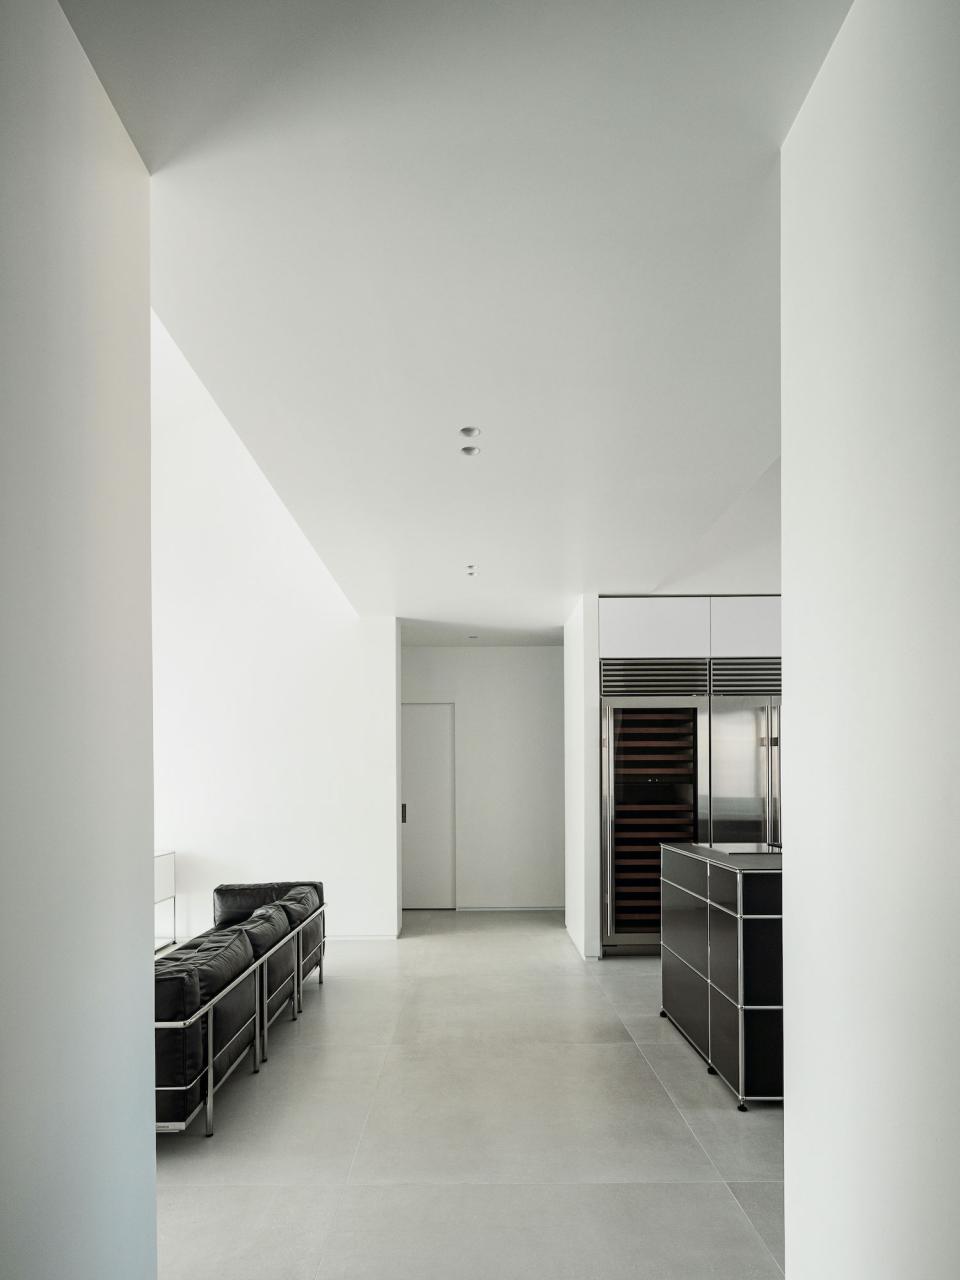 公寓设计,顶层公寓设计案例,oftn studio,165㎡,韩国,首尔,极简主义,极简风格,USM家具